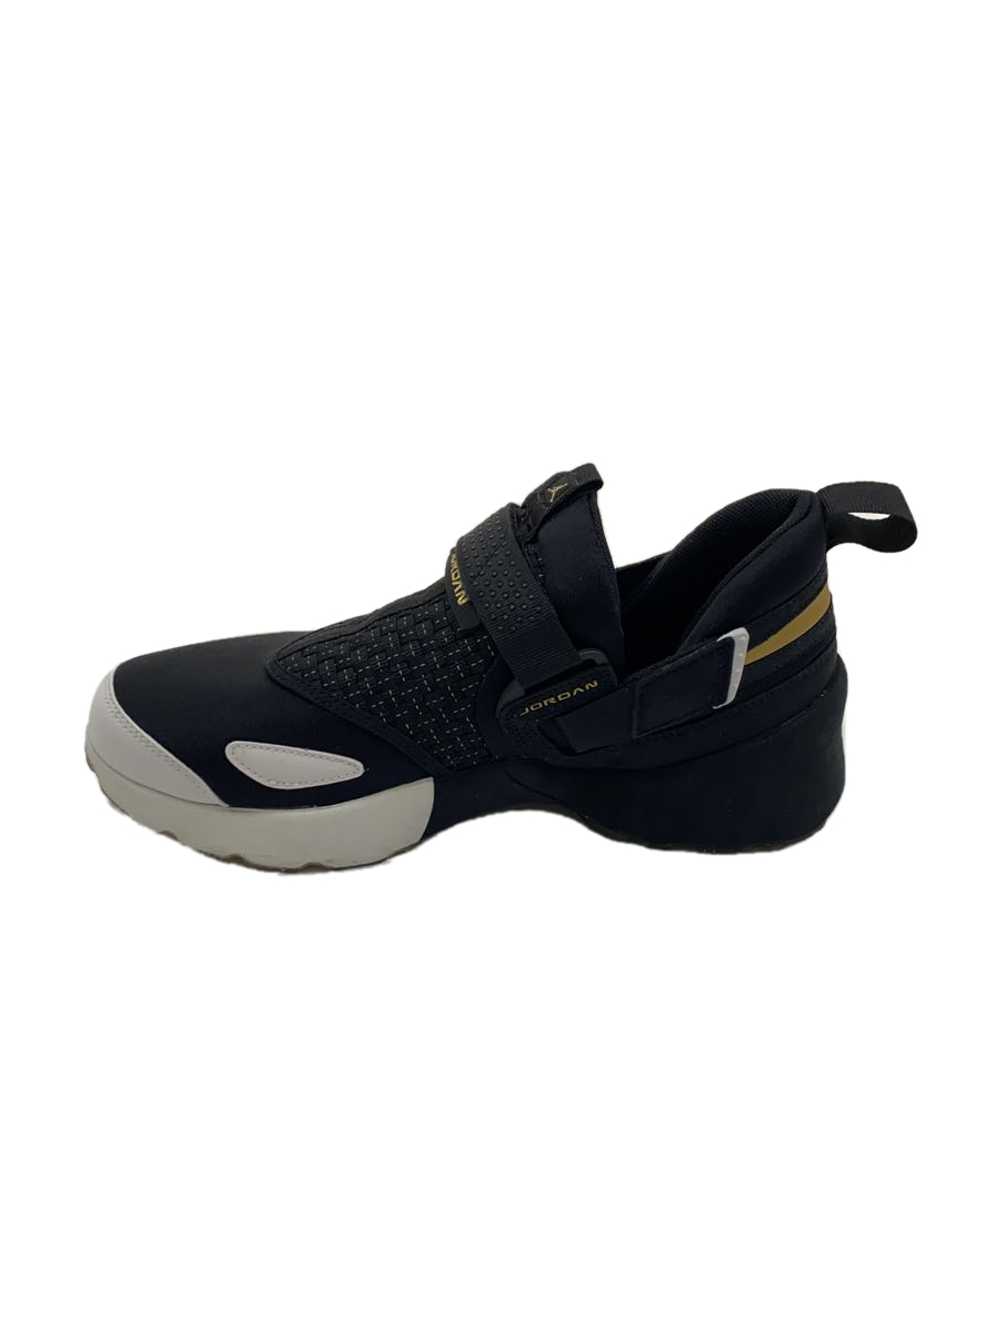 Nike Jordan Trunner Lx Bhm/Jordan Trunner/Black/9… - image 1